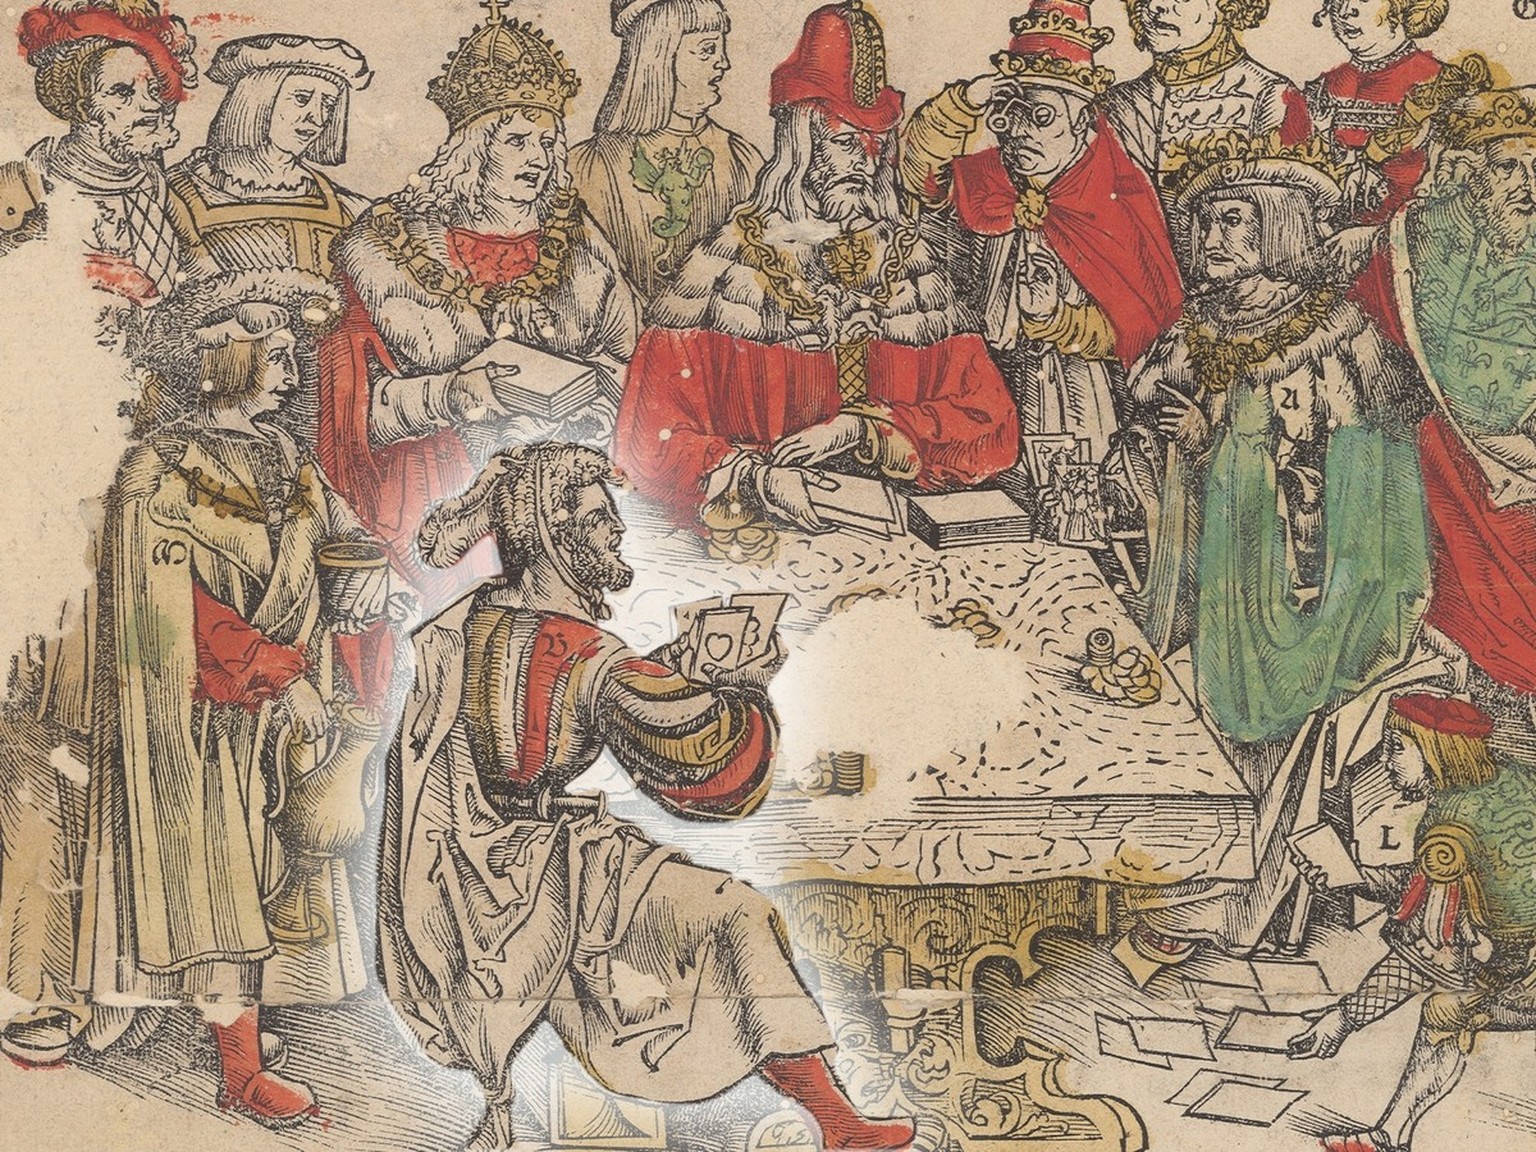 Der Eidgenosse hat am Spieltisch gegenüber den mächtigen Herrschern Europas die besten Karten. Holzschnitt von Hans Rüegger, 1514 (Ausschnitt).